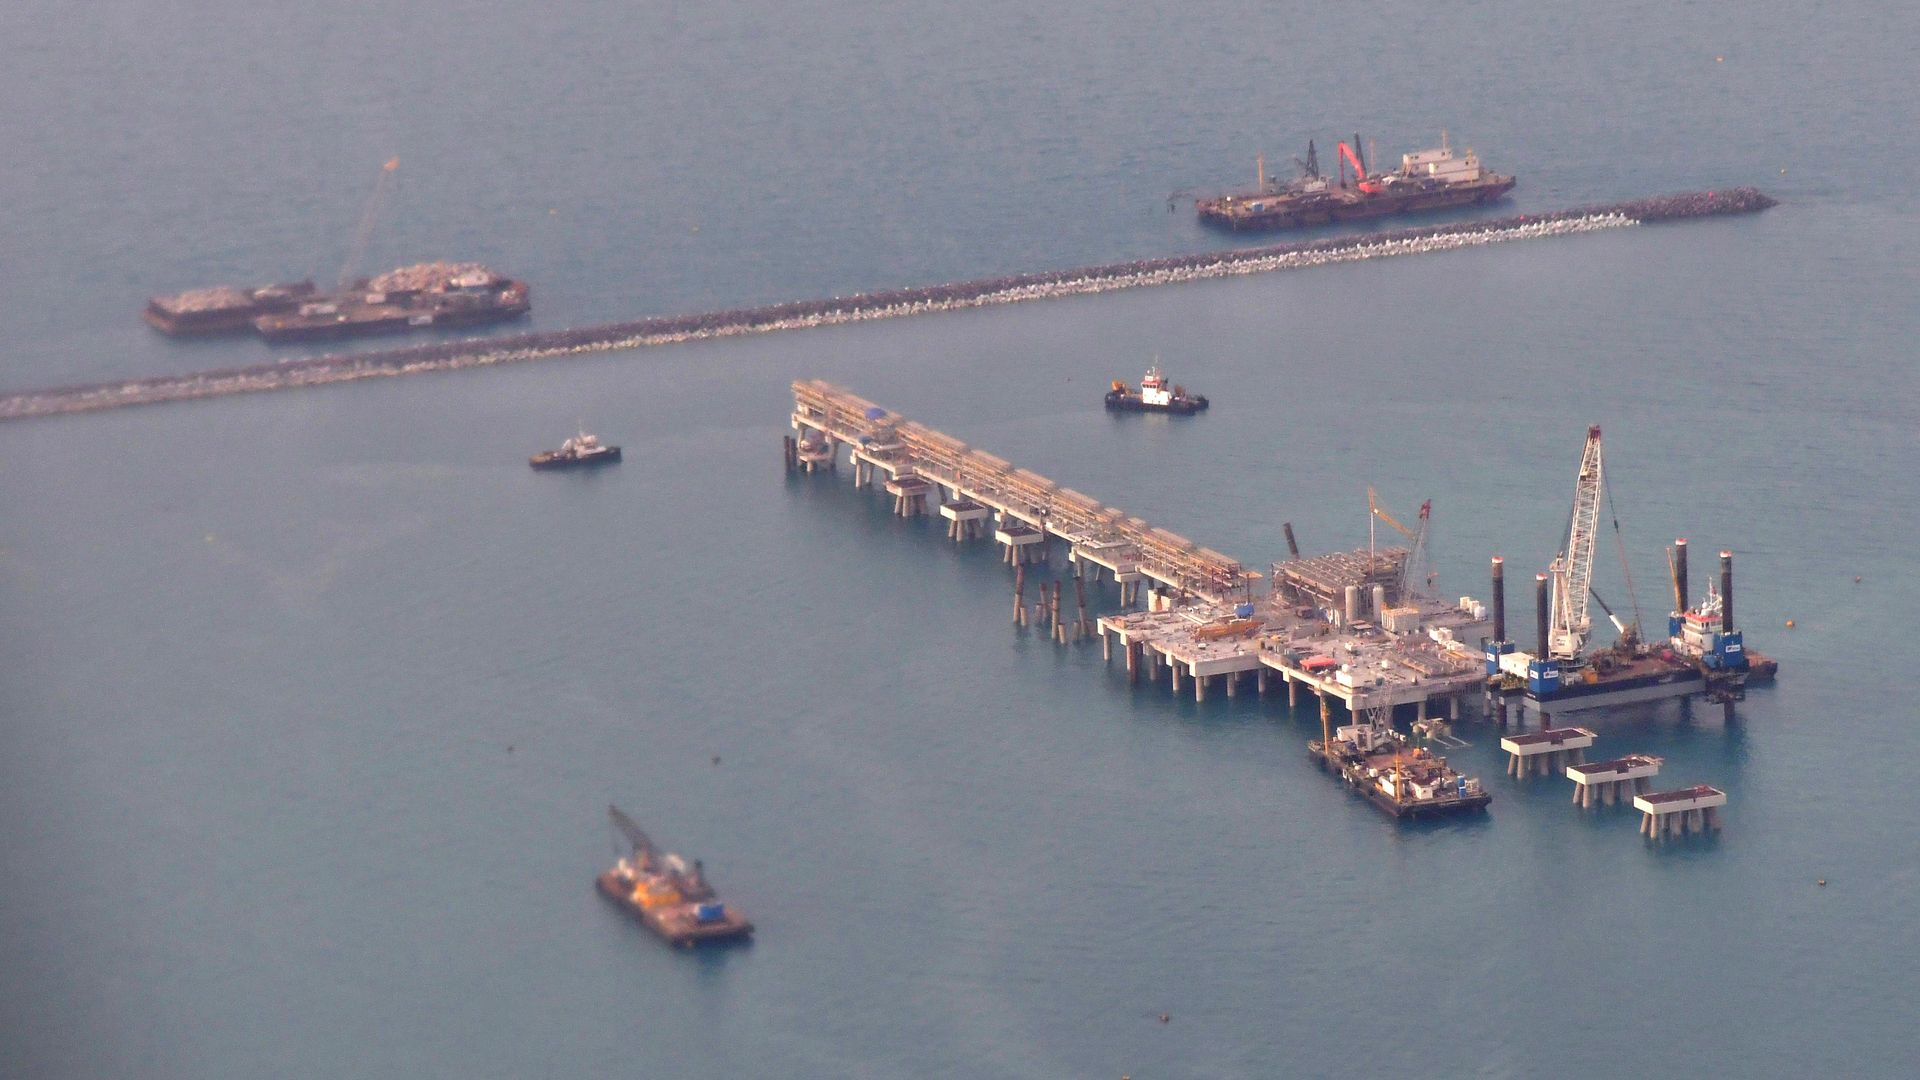 An oil platform in Bahrain.